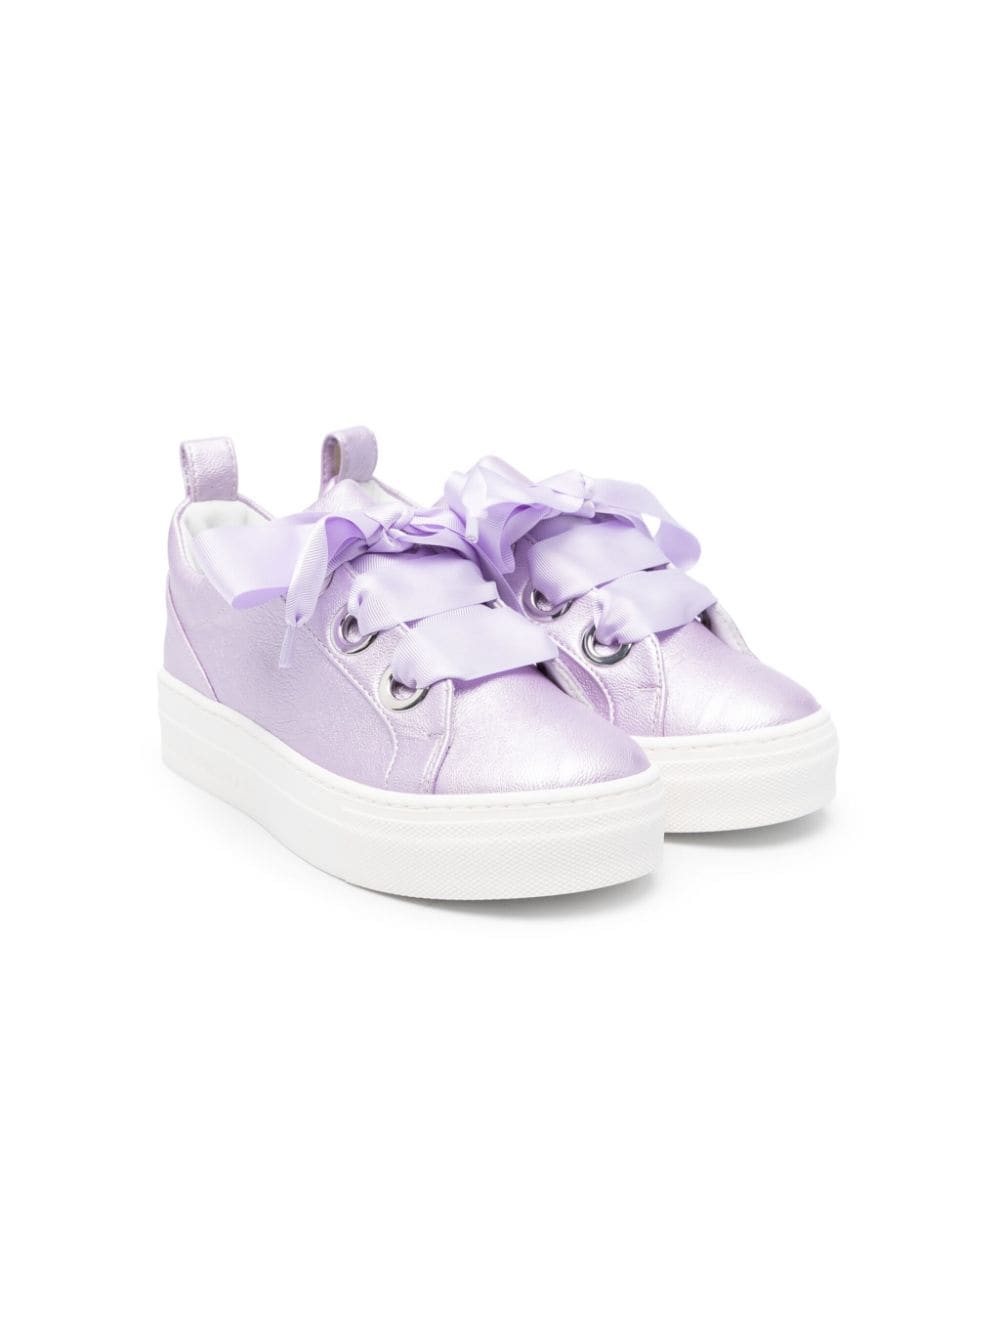 Colorichiari Sneakers mit metallischem Finish - Violett von Colorichiari